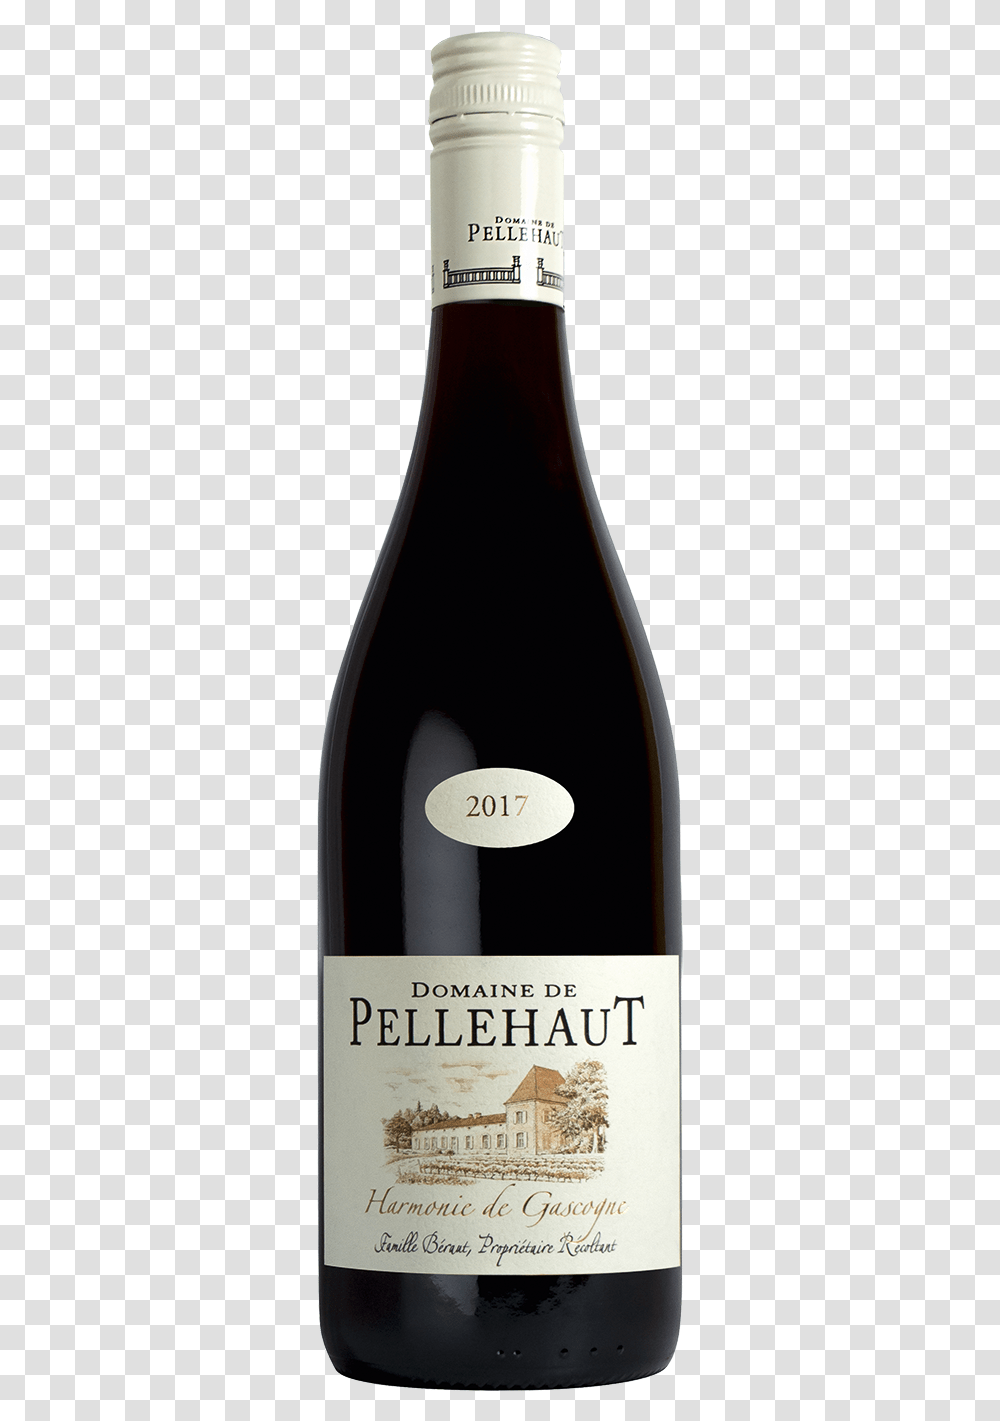 Domaine De Pellehaut Harmonie De Gascogne 2016, Wine, Alcohol, Beverage, Drink Transparent Png